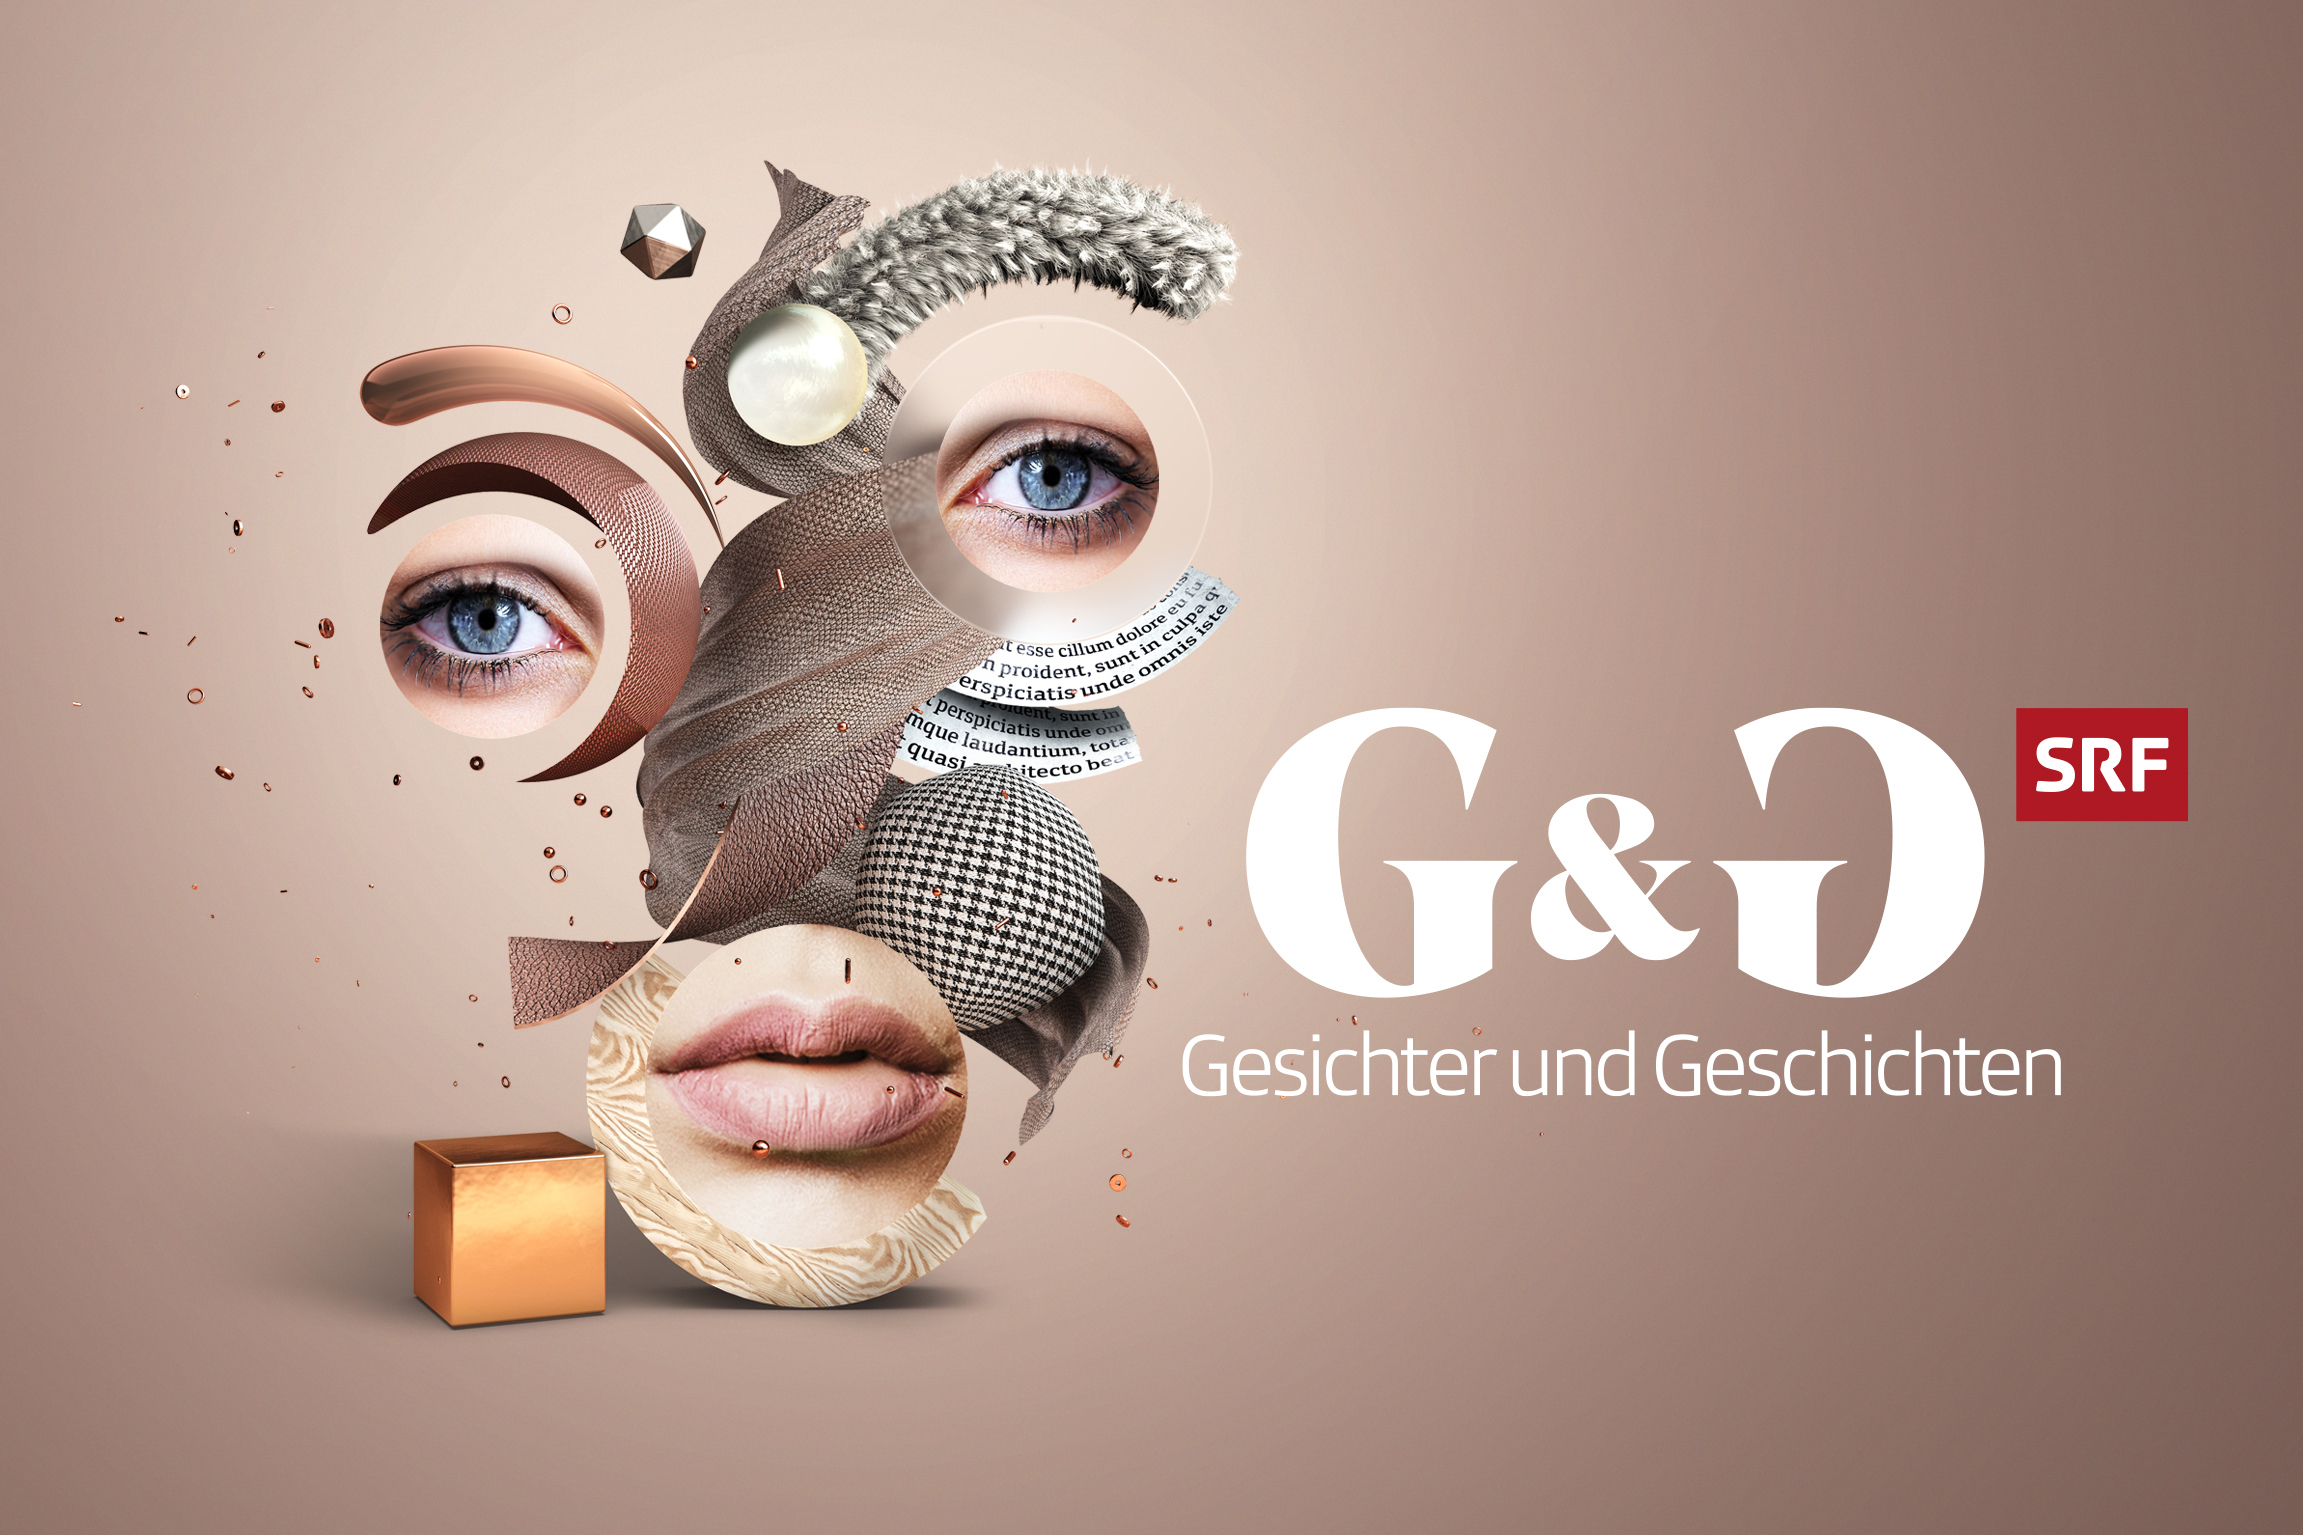 G&G – Gesichter und GeschichtenKeyvisual 2020